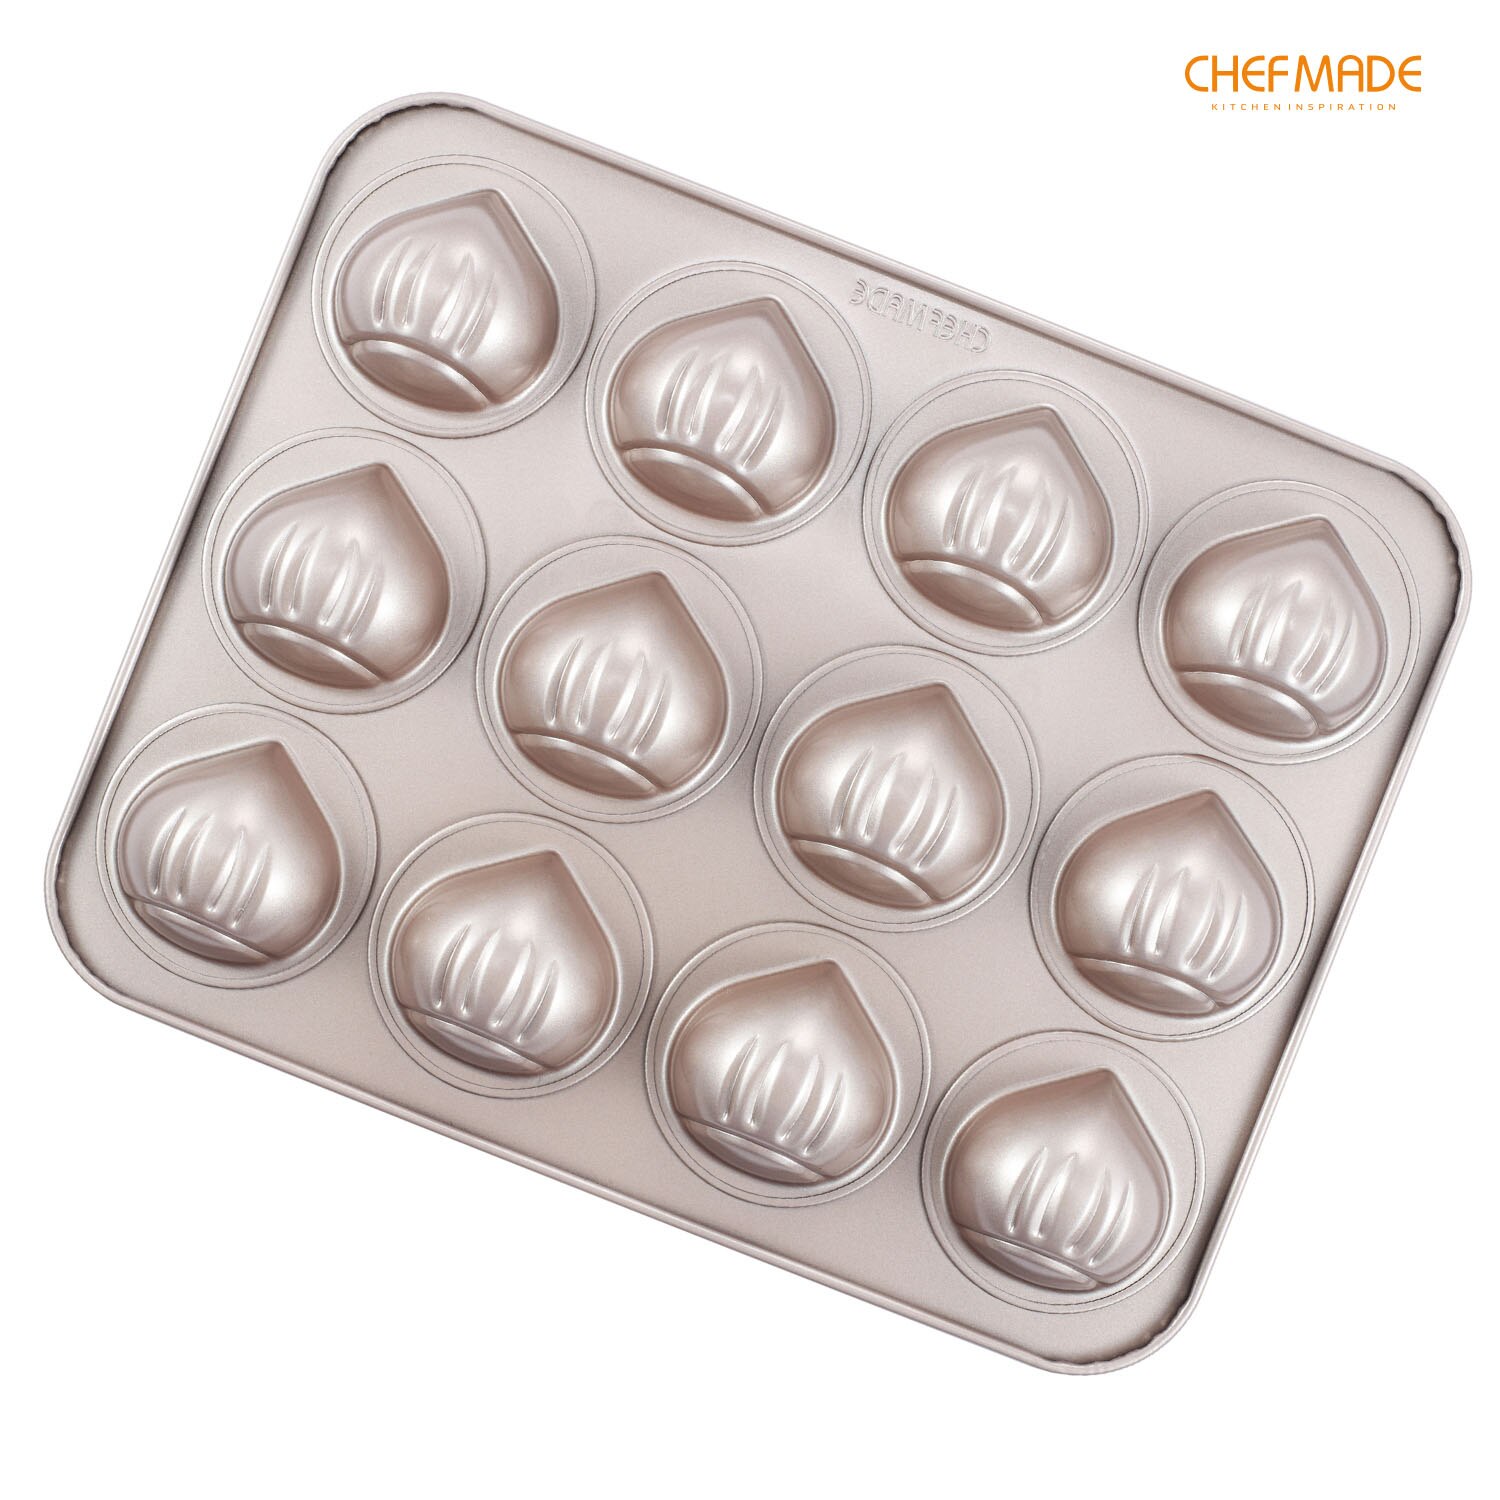 CHEFMADE Kastanje-Vormige Cakevorm, 12-Cavity Non-stick Brood Pan, FDA Goedgekeurd voor Kitchen Oven Bakken